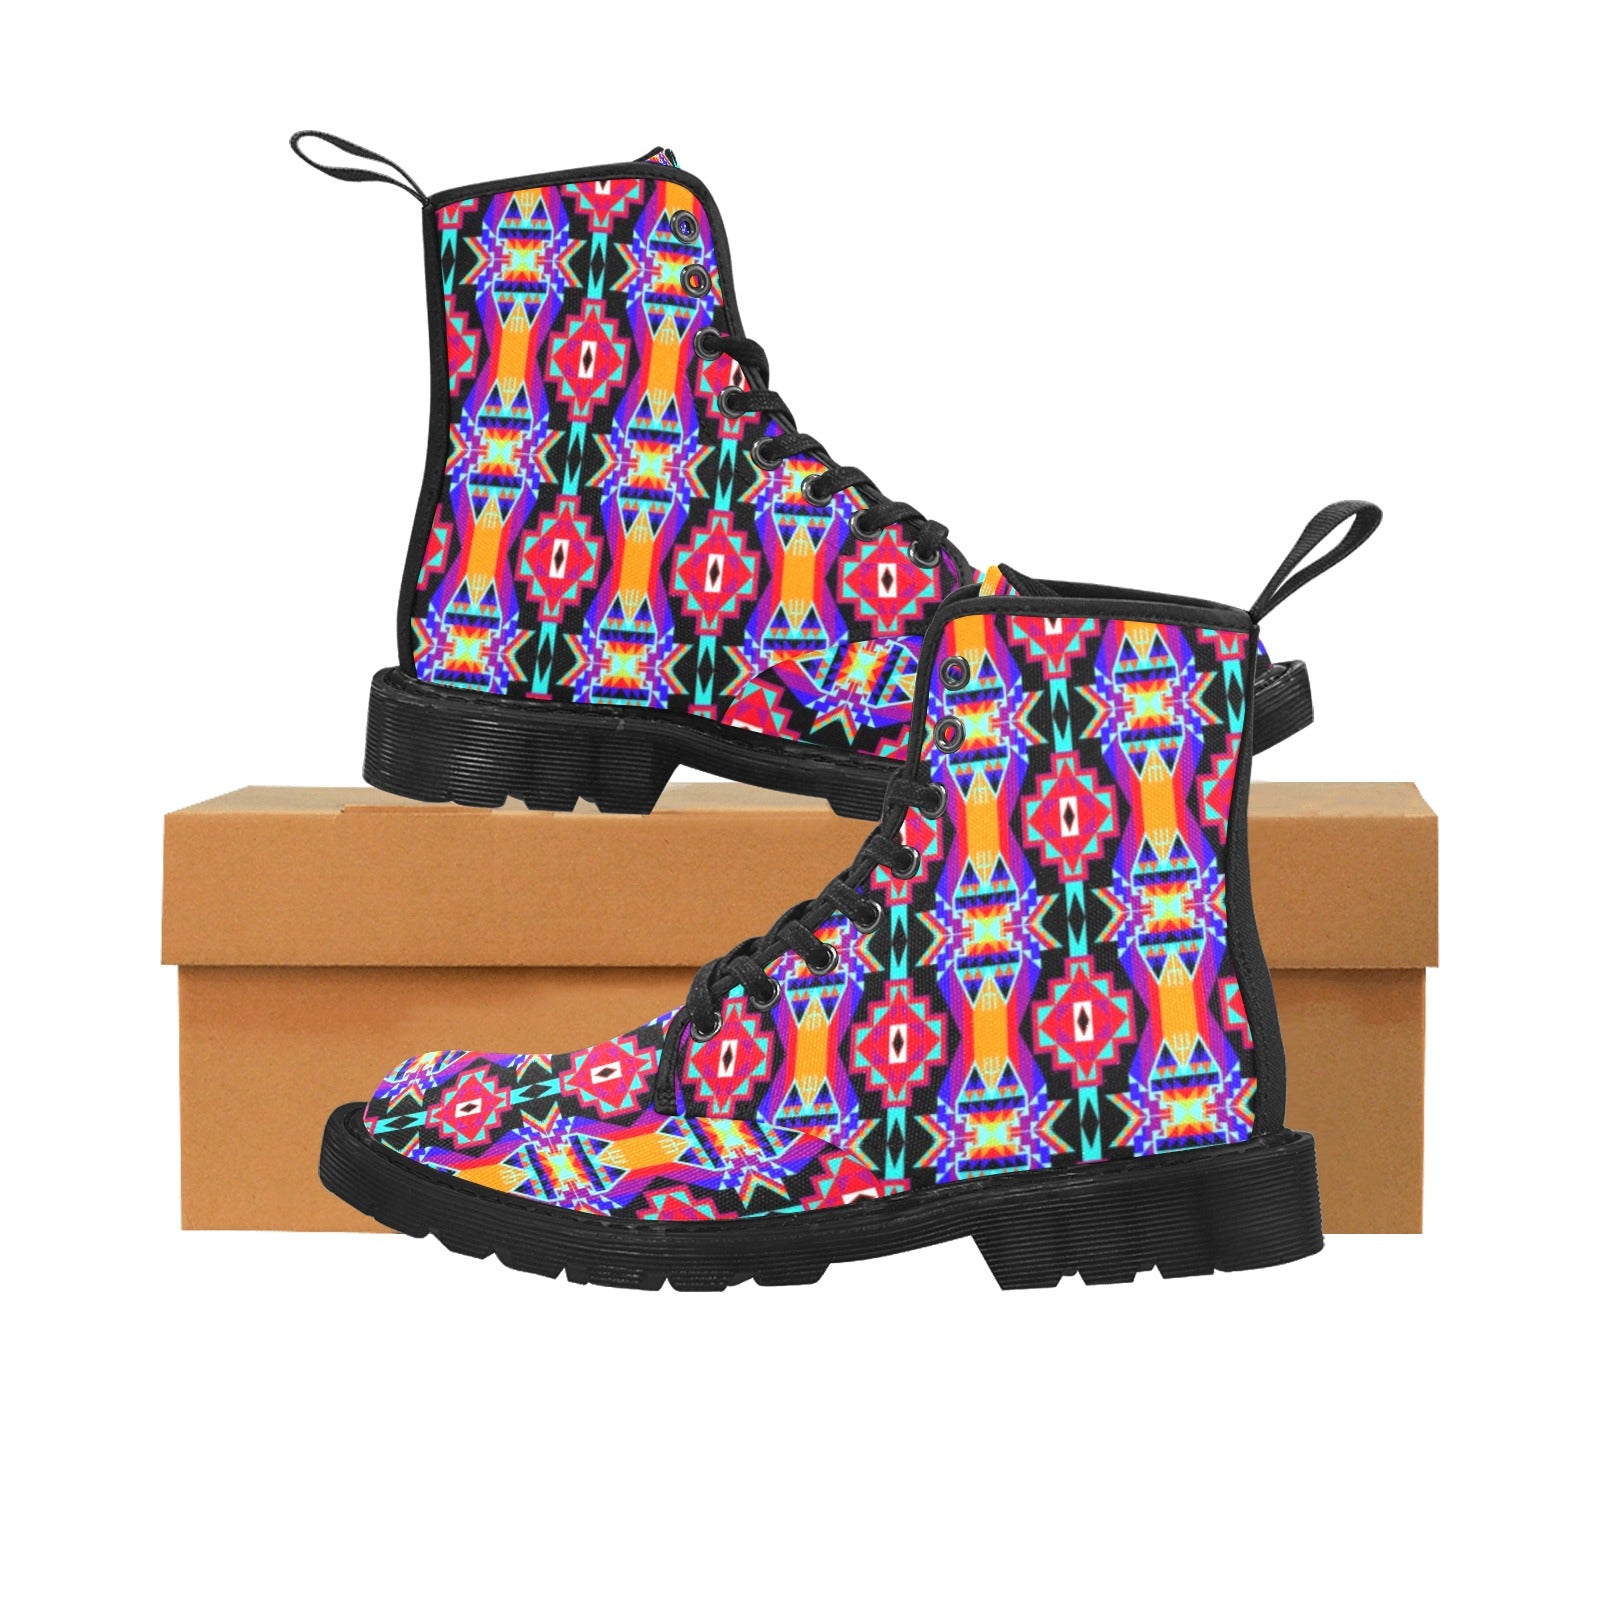 Fancy Bustle Boots for Women (Black)